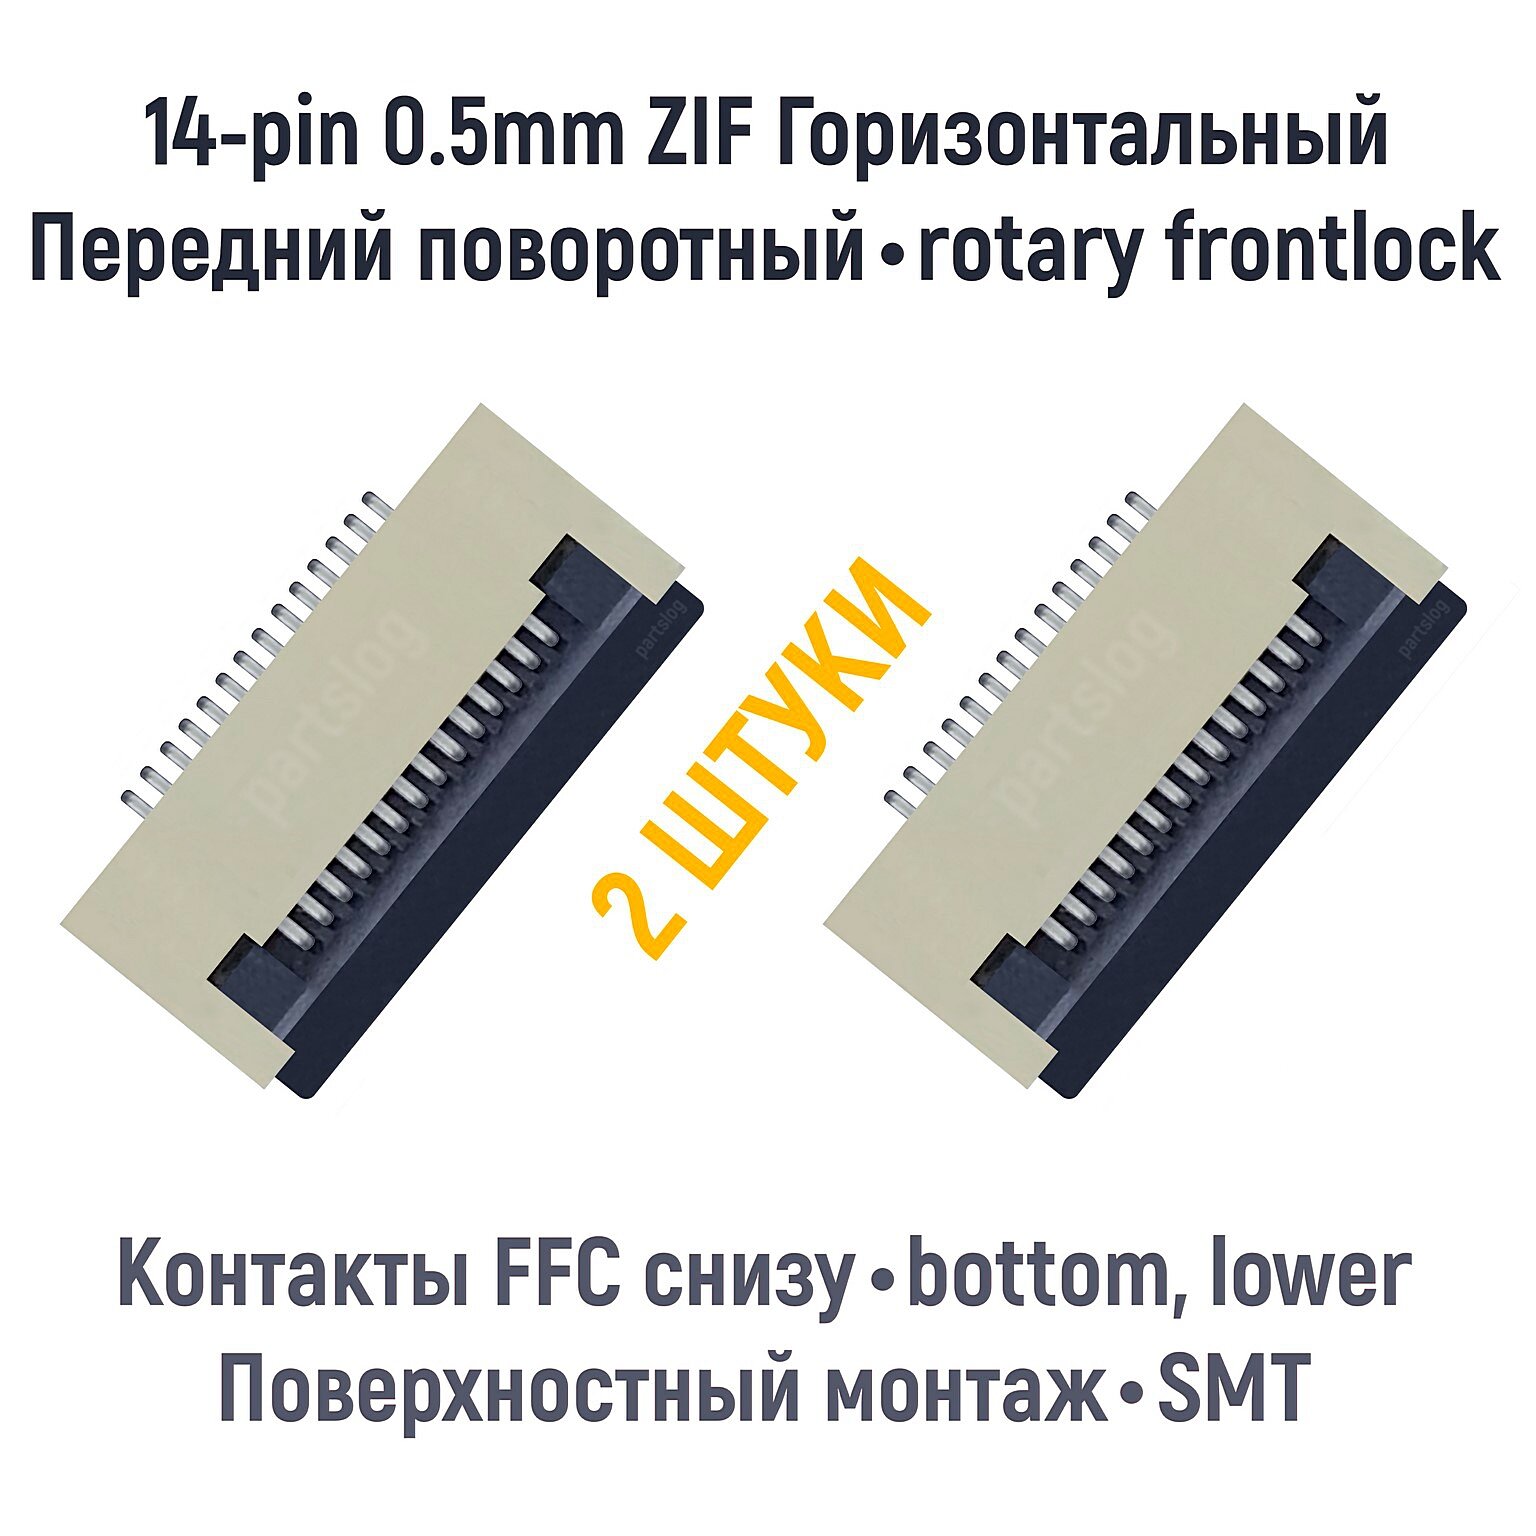 Разъем FFC FPC 14-pin шаг 0.5mm ZIF нижние контакты SMT (2 штуки)